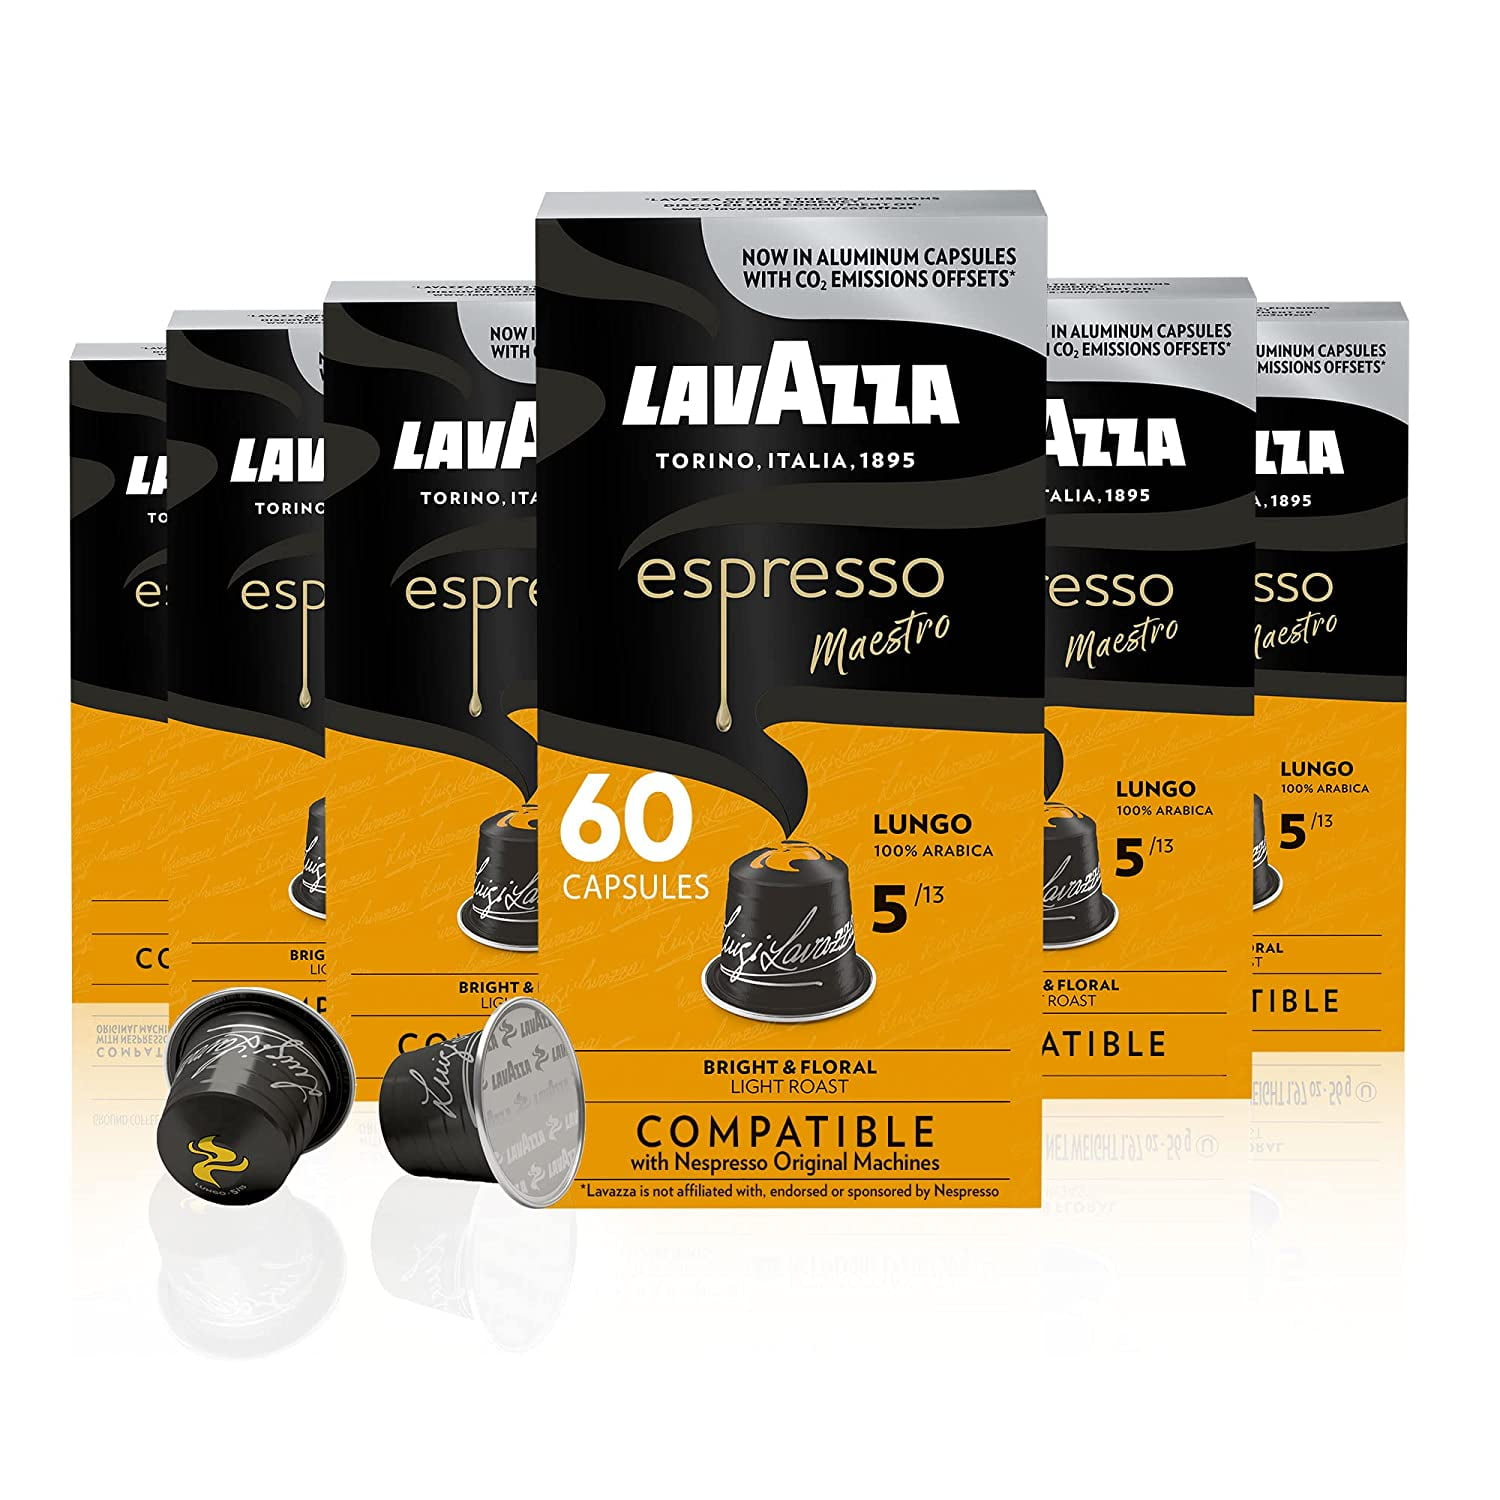 Lavazza Espresso Coffee Bean Sampler